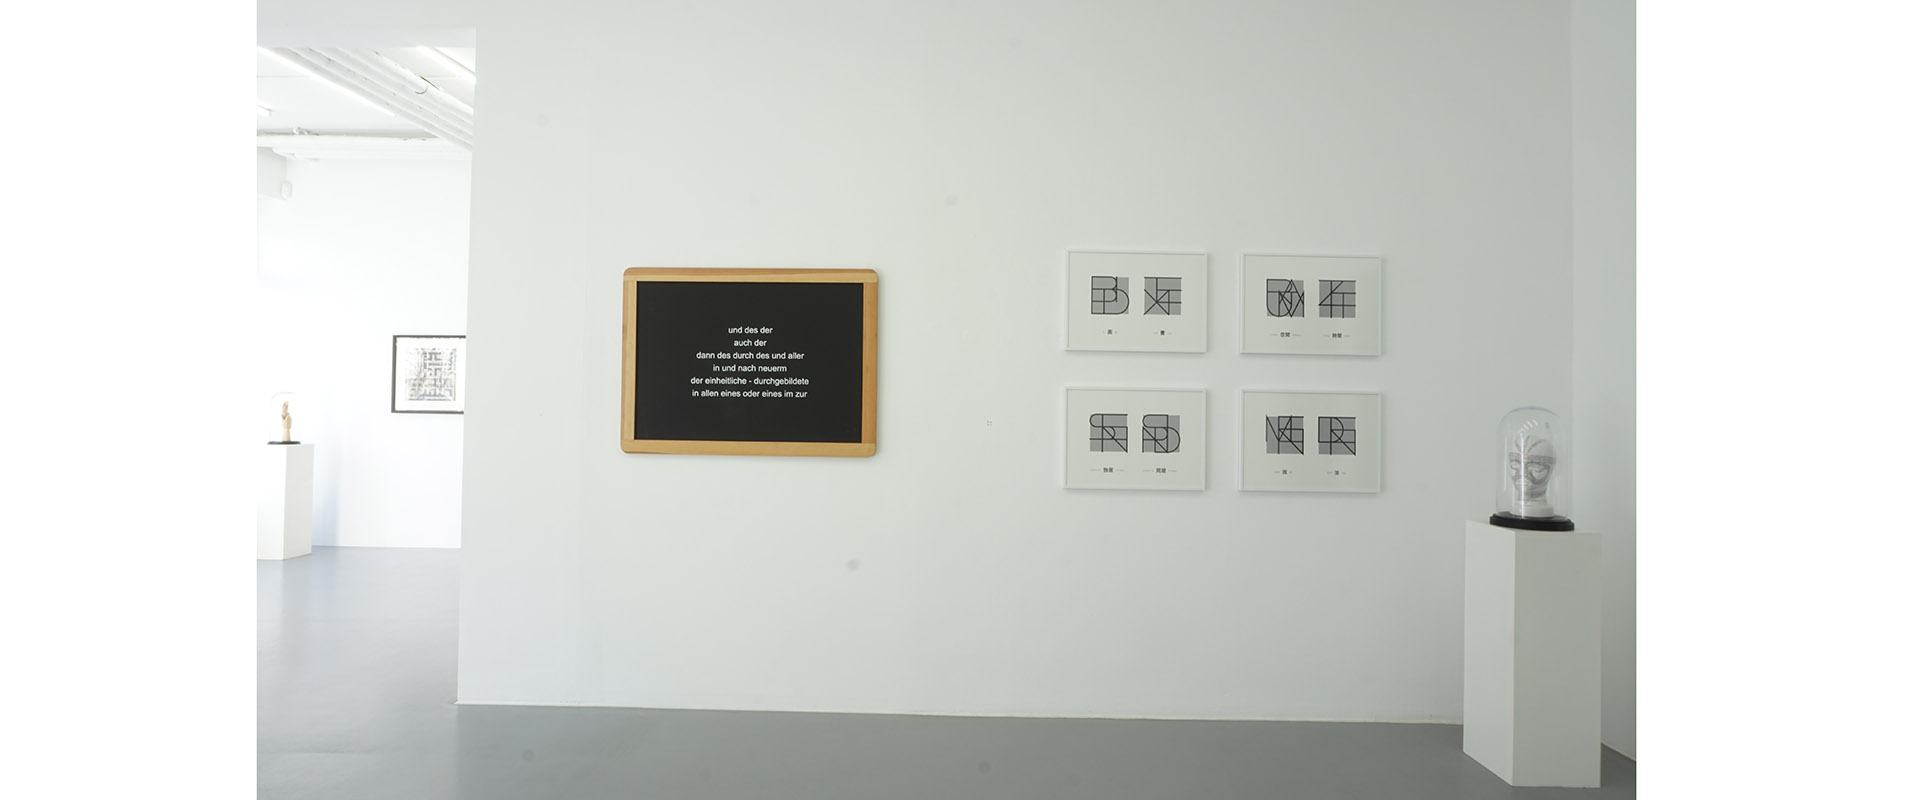 Ausstellungsansicht "AM ANFANG WAR DAS WORT AM. Sprache in Wort und Bild", Galerie Renate Bender 2018